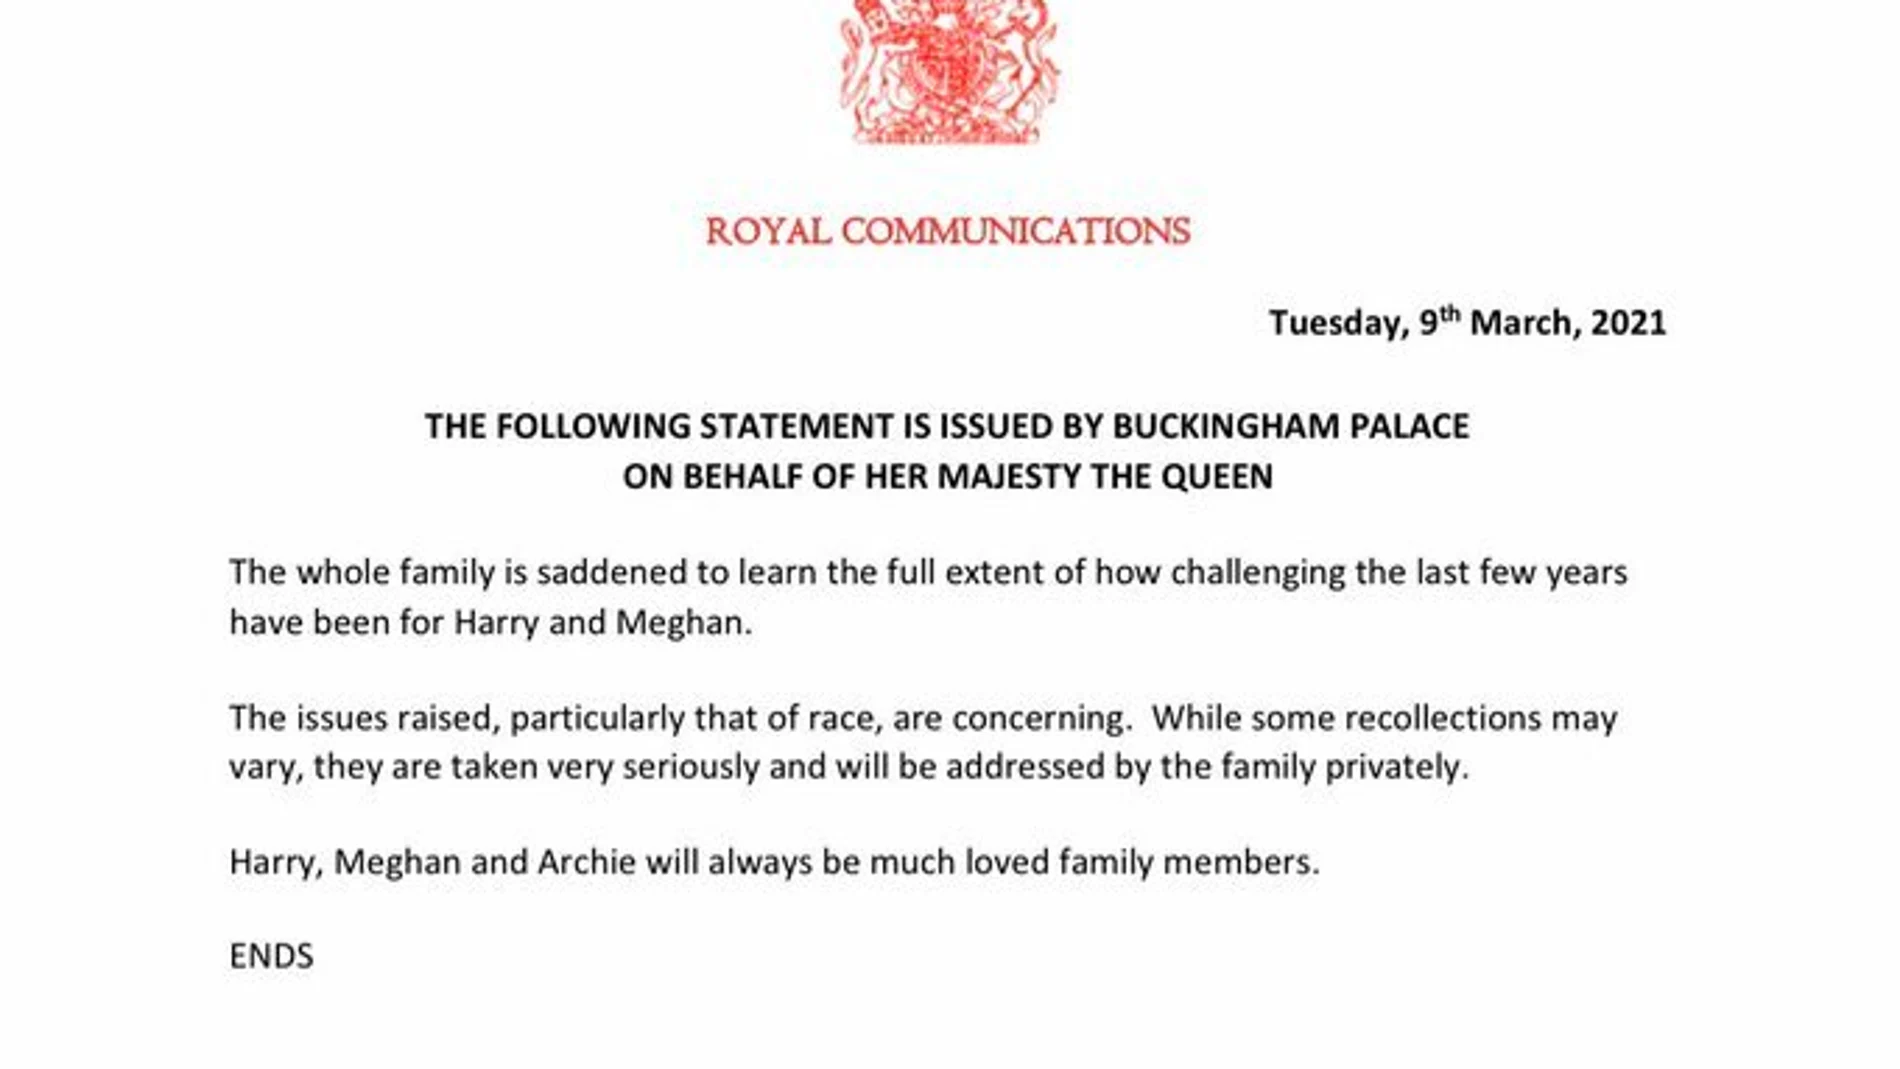 La Casa Real británica se muestra "preocupada" por el racismo que afirmó sufrir Meghan Markle y "lamenta" sus momentos difíciles